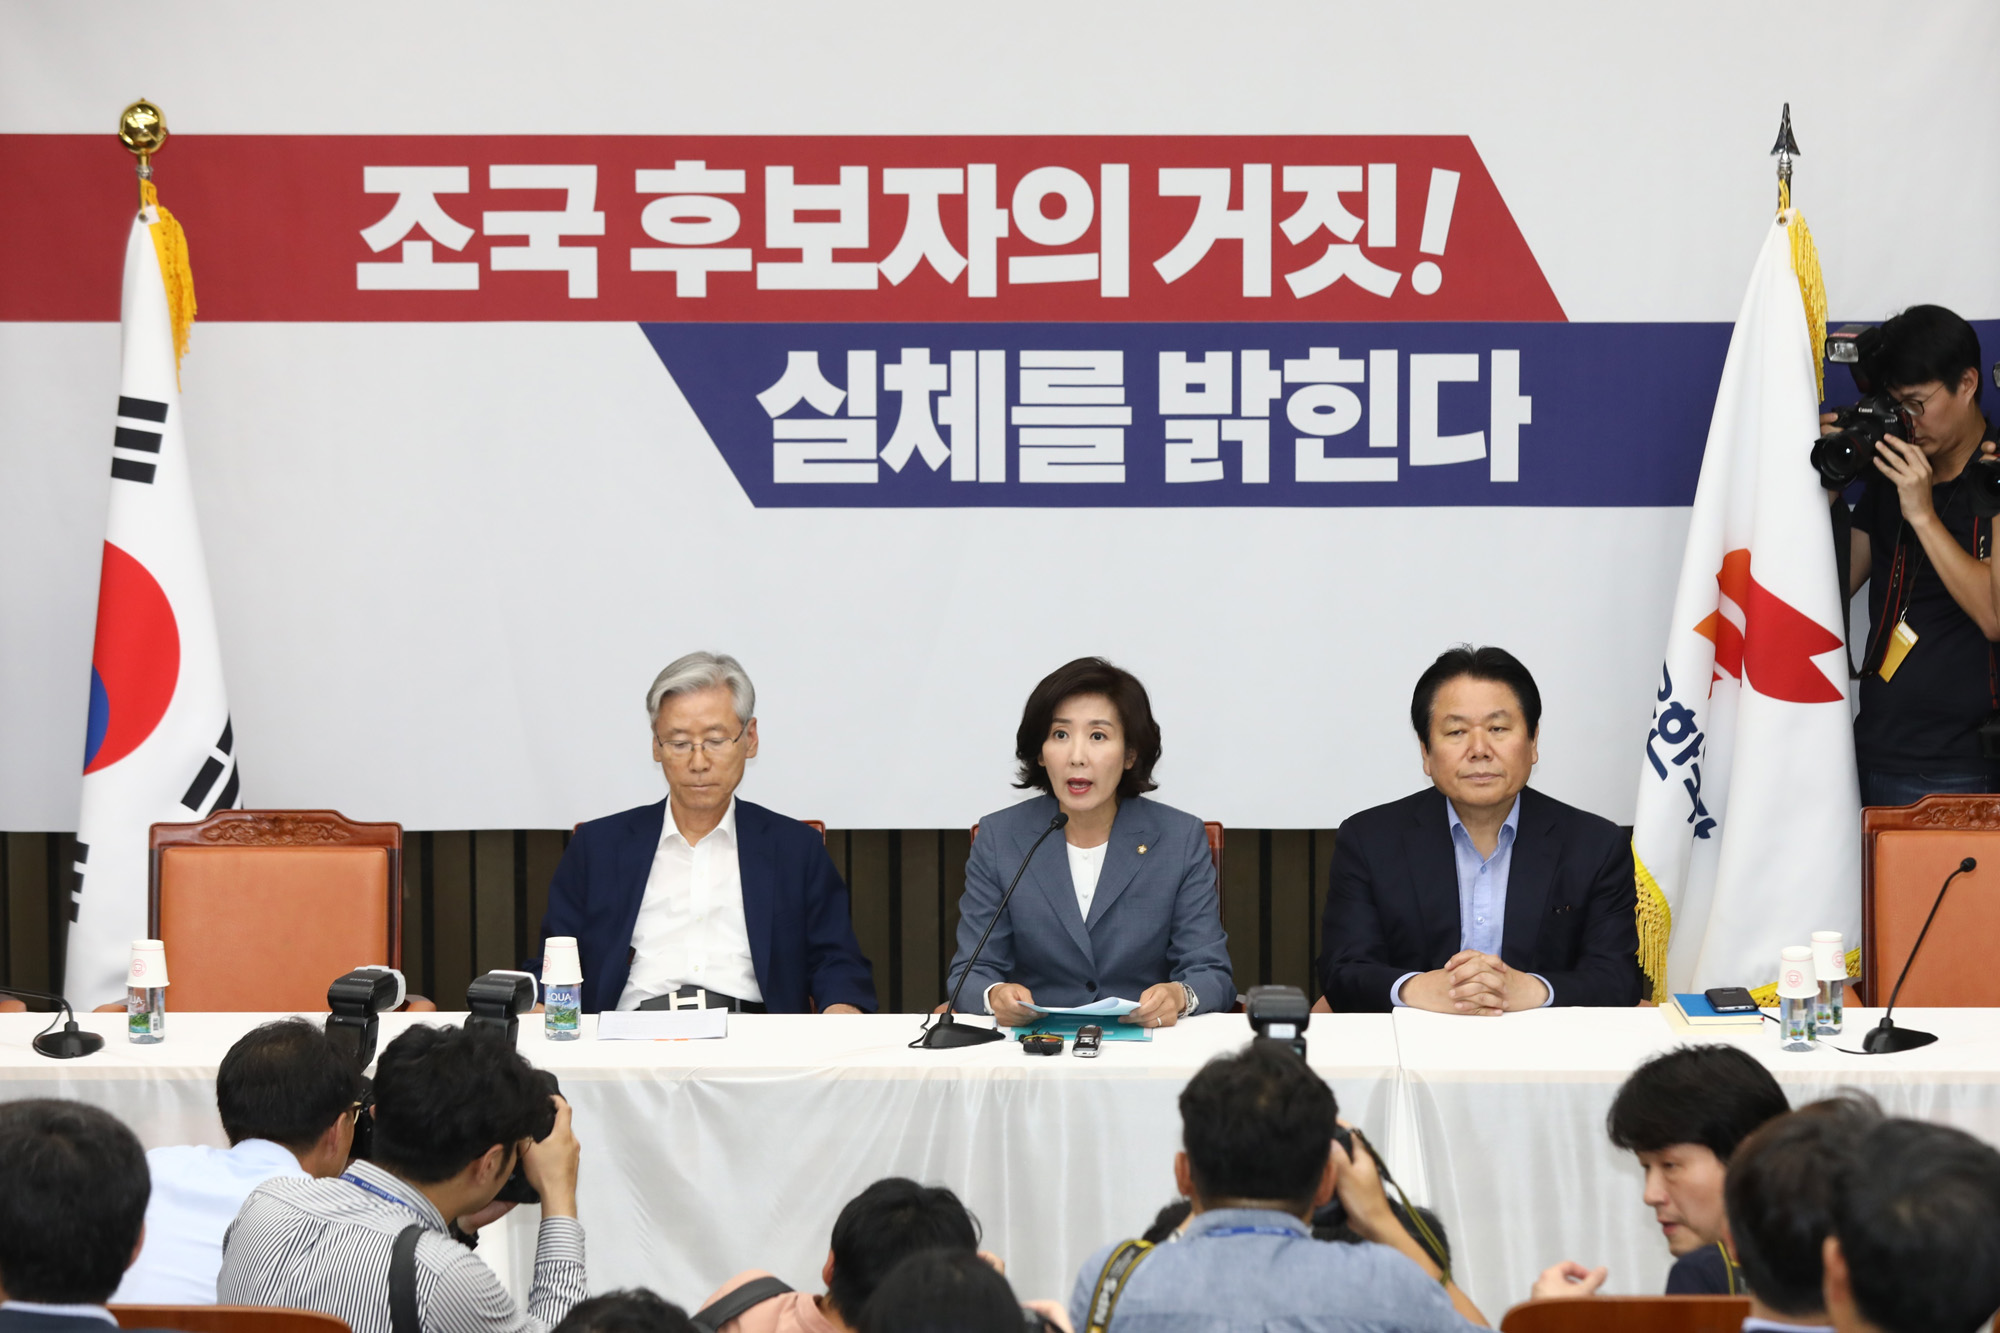 자유한국당;조국후보자실체를밝힌다;한국당반박기자간담회;나경원원내대표